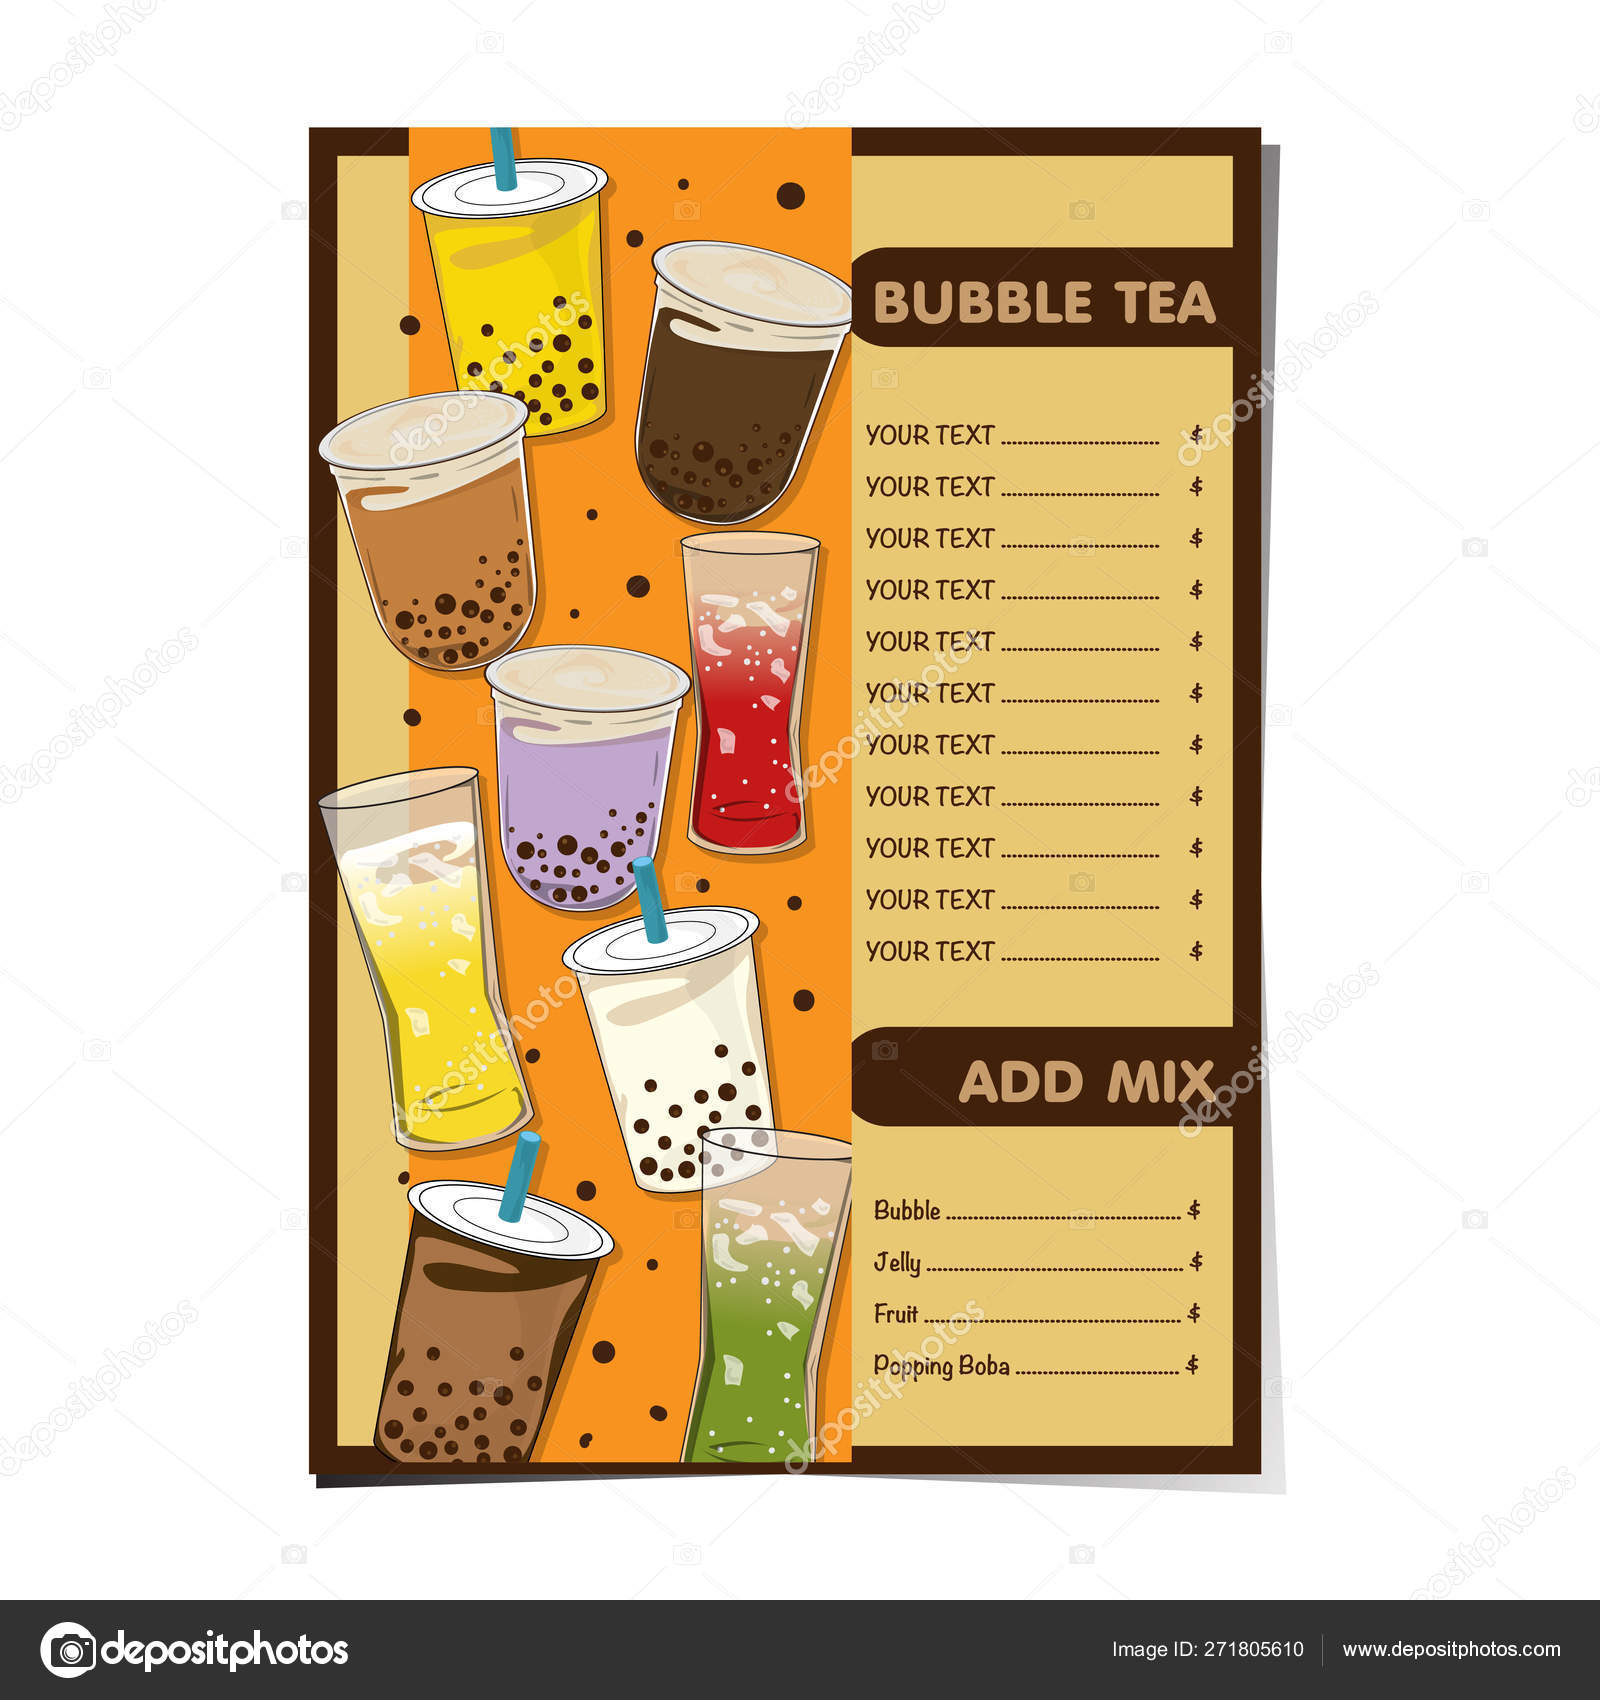 Nếu bạn thích sự lựa chọn đa dạng, thì thực đơn trà sữa sẽ là một lựa chọn hoàn hảo cho bạn. Xem ảnh về thực đơn trà sữa để tìm kiếm được loại thức uống phù hợp với khẩu vị của mình.